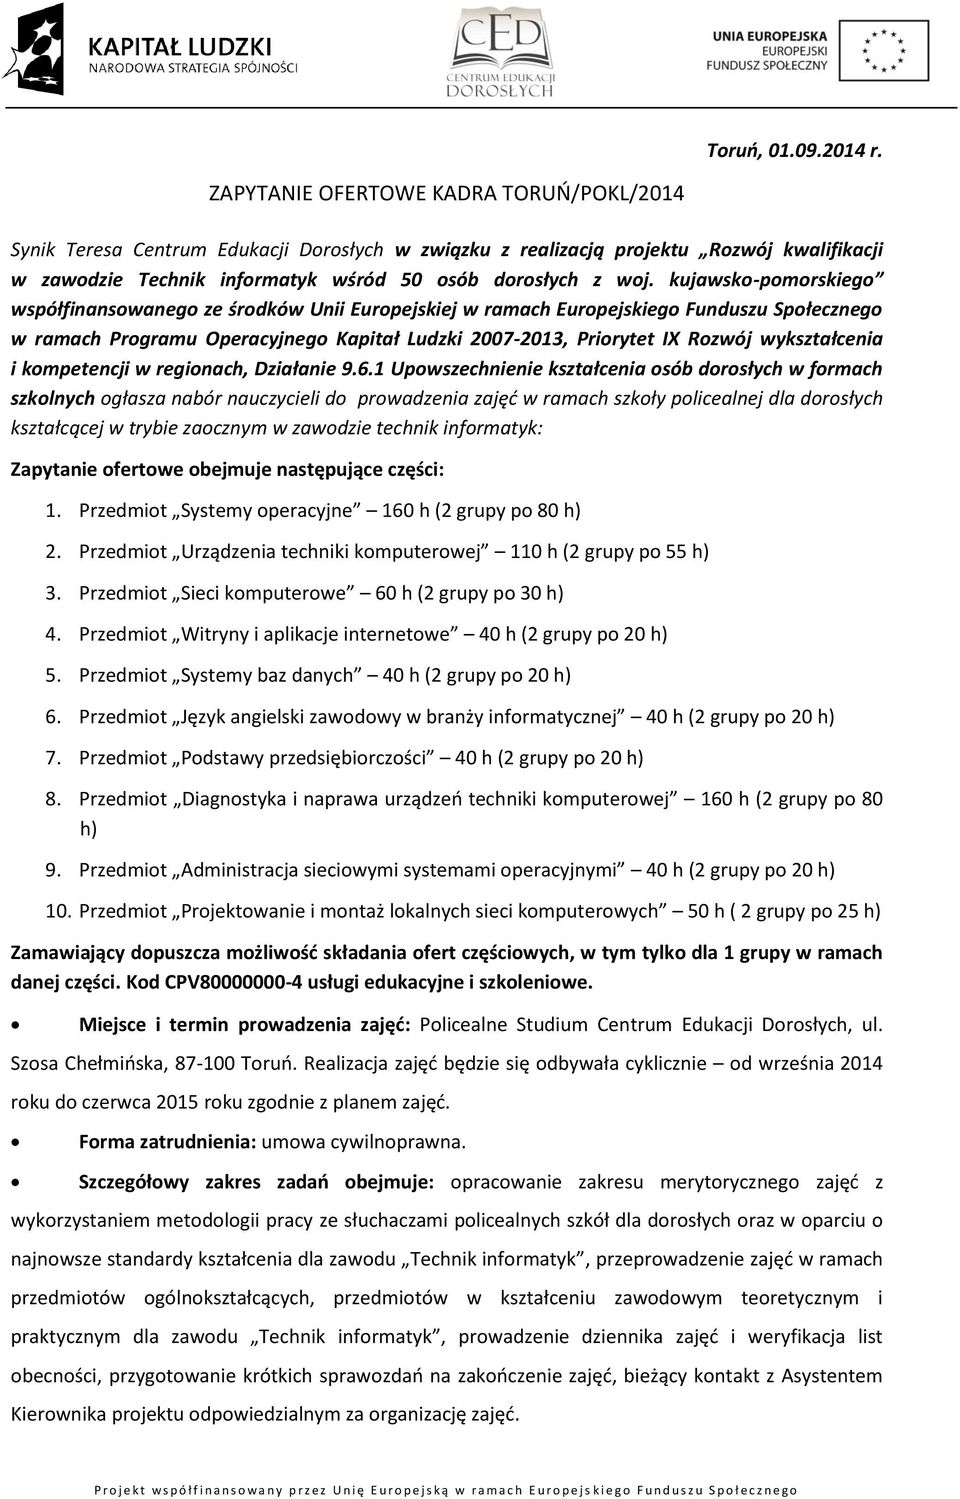 kujawsko-pomorskiego współfinansowanego ze środków Unii Europejskiej w ramach Europejskiego Funduszu Społecznego w ramach Programu Operacyjnego Kapitał Ludzki 2007-2013, Priorytet IX Rozwój